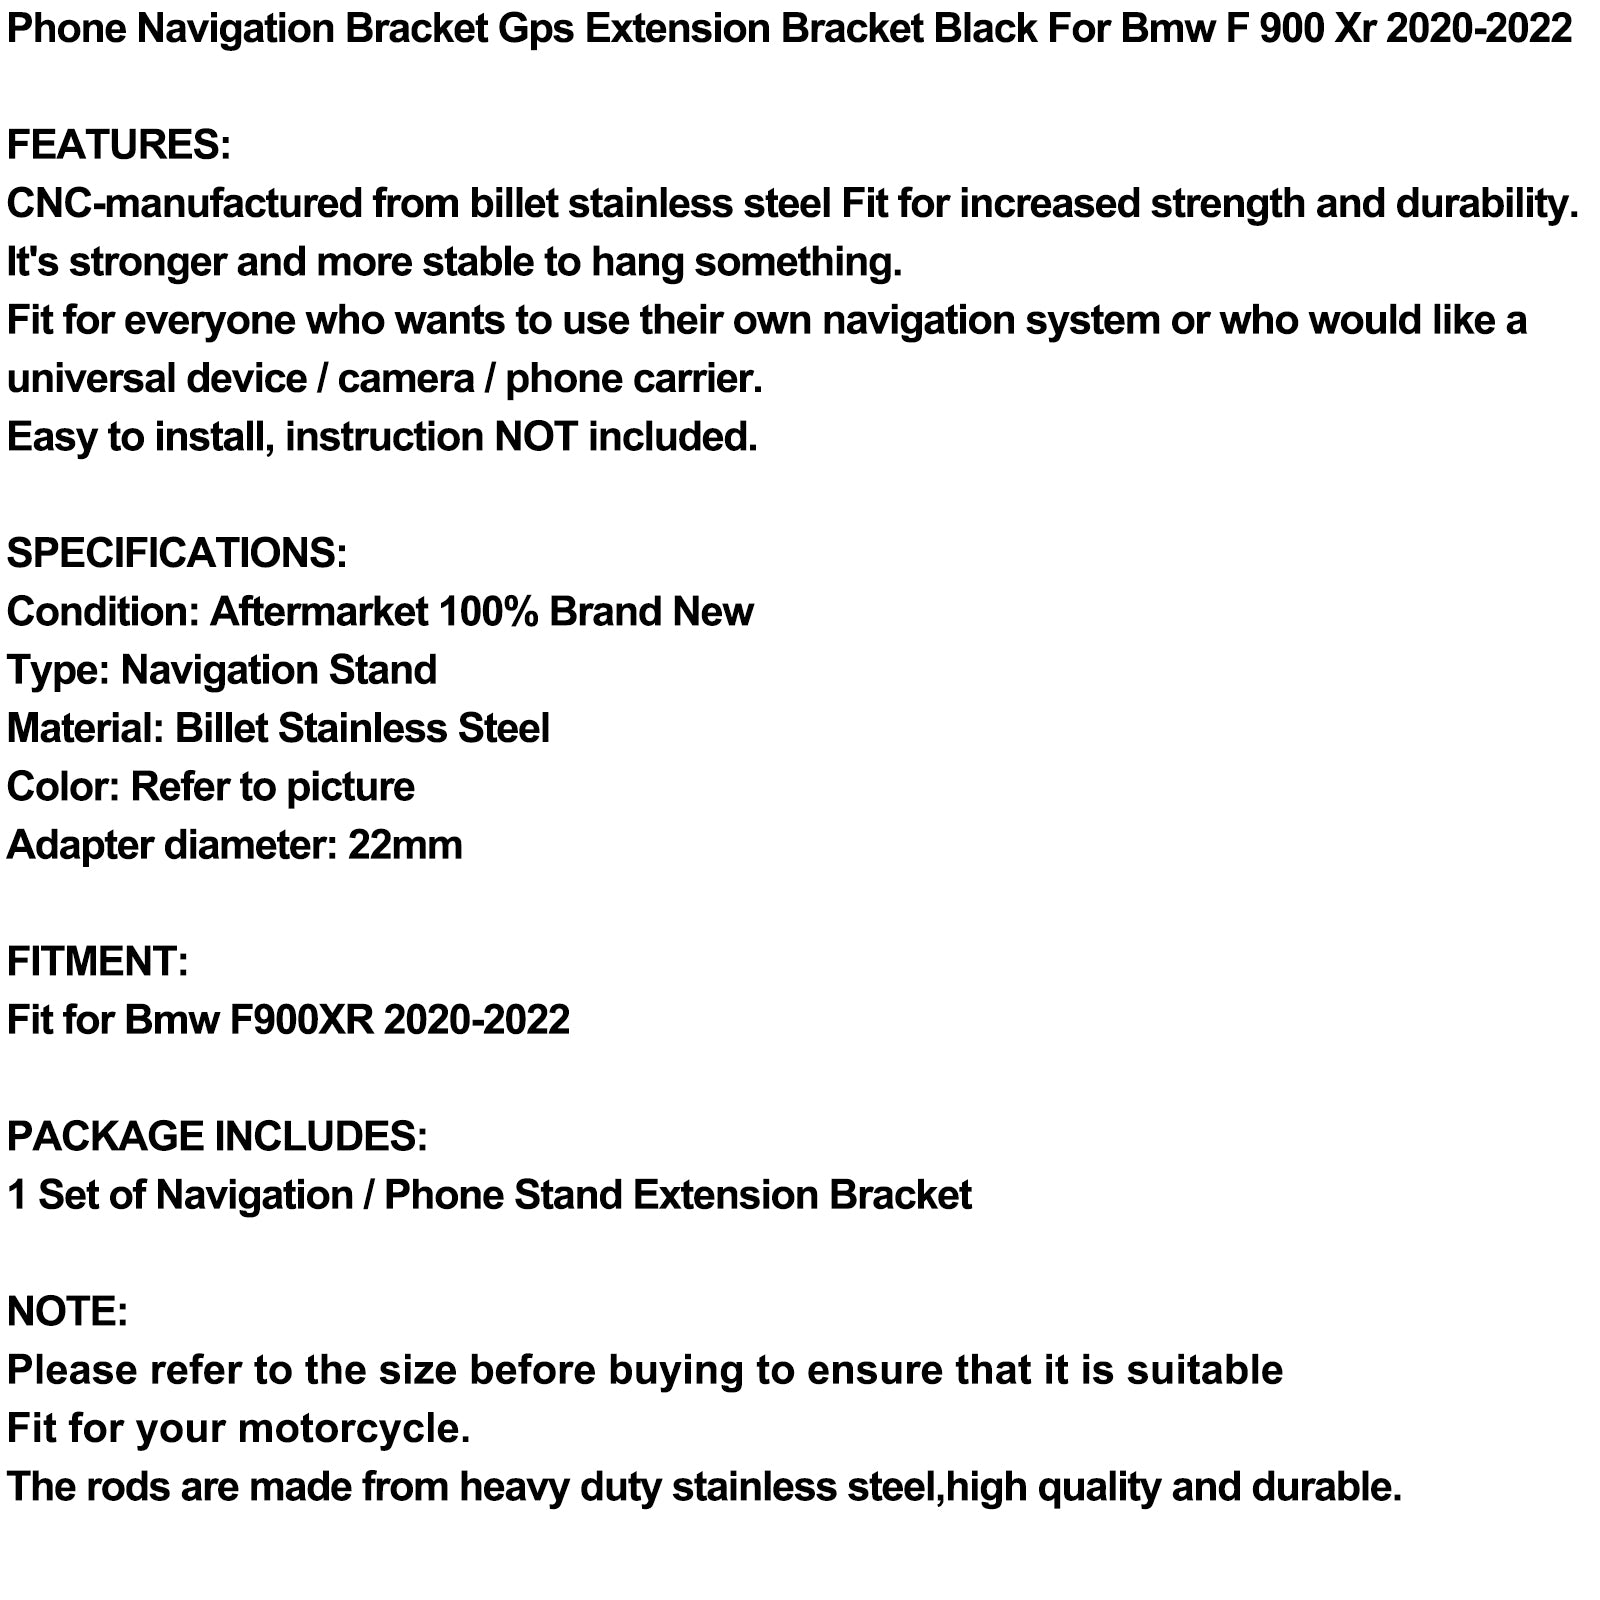 Navigation Bracket Phone Gps Bracket Black Fits For Bmw F 900 Xr 2020-2022 21 Generic